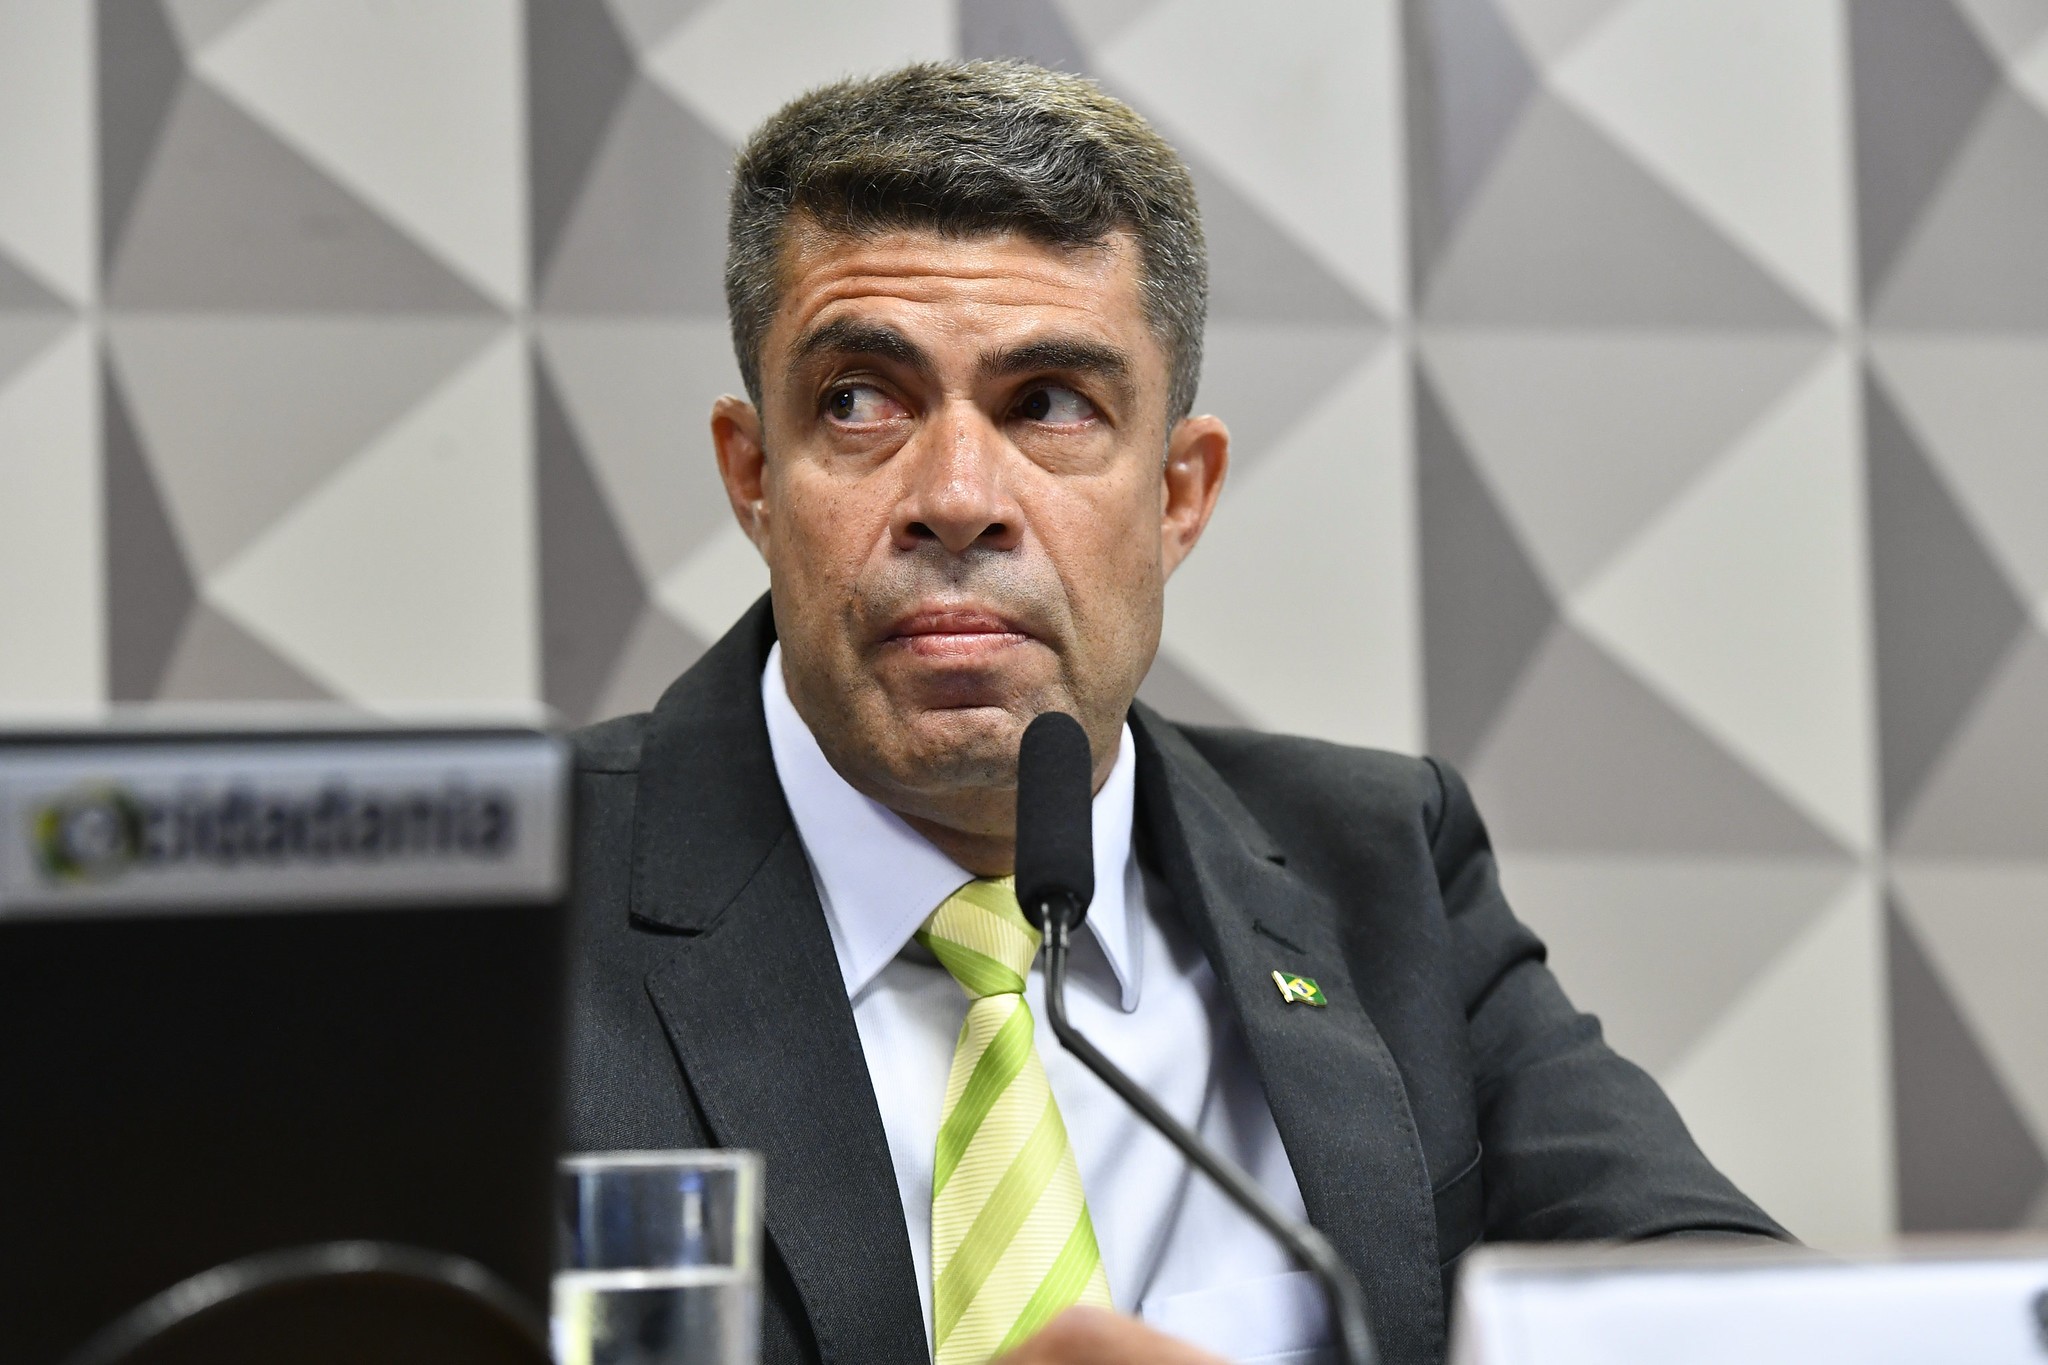 Indiciados pela PF, ex-assessor de Bolsonaro e sobrinho buscam acordo com o Ministério Público